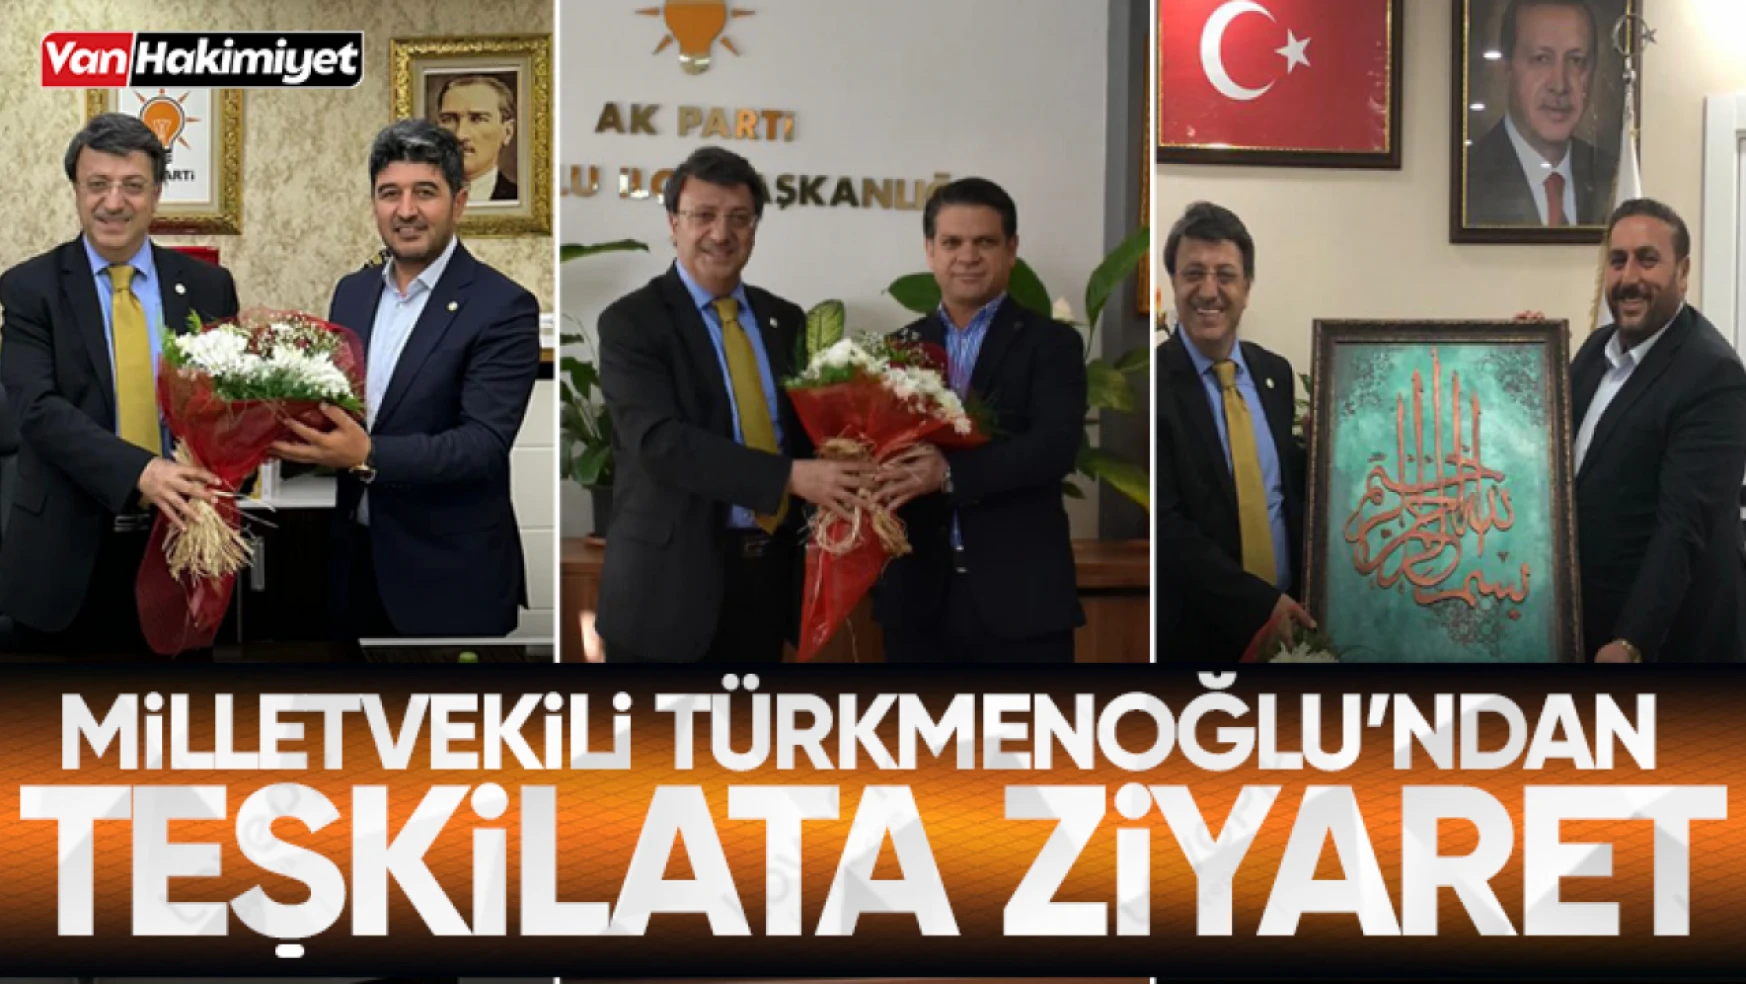 Milletvekili Türkmenoğlu'ndan teşkilata ziyaret